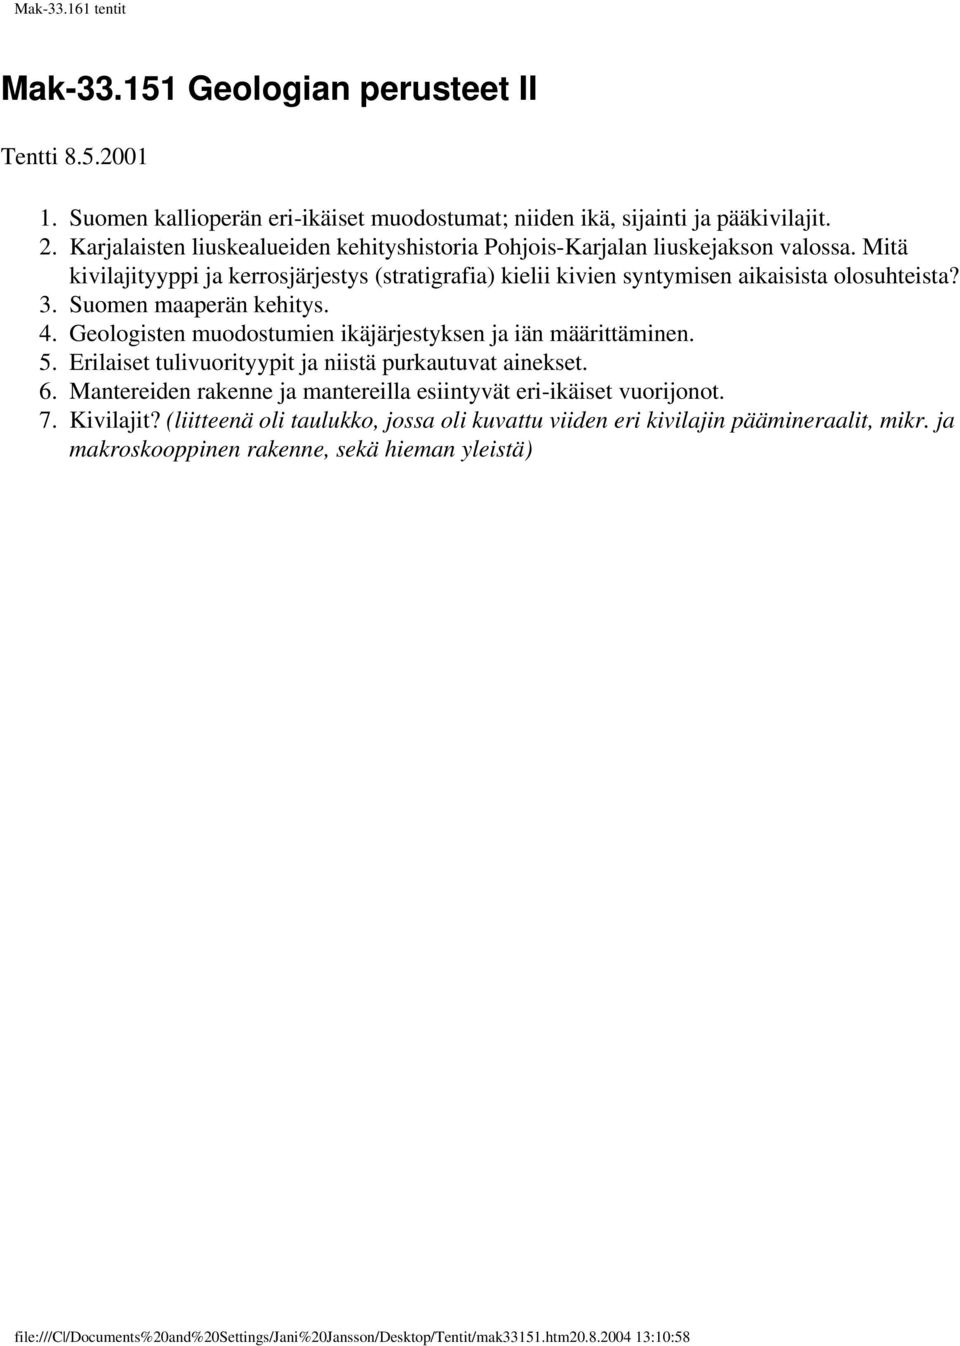 Suomen maaperän kehitys. 4. Geologisten muodostumien ikäjärjestyksen ja iän määrittäminen. 5. Erilaiset tulivuorityypit ja niistä purkautuvat ainekset. 6.